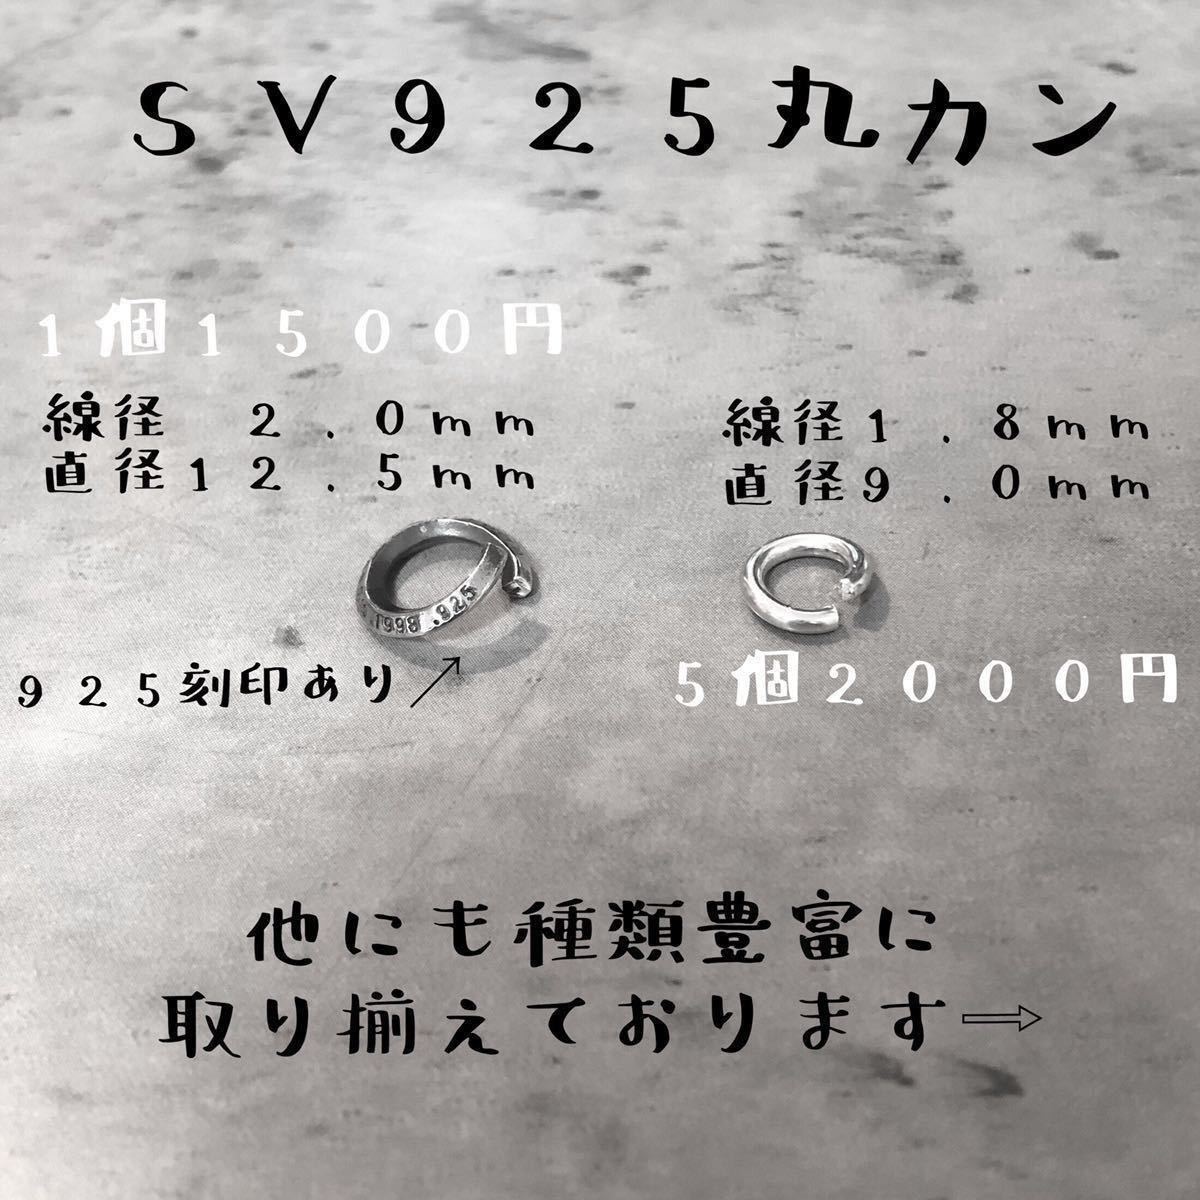 シルバー925 線径1.8mm × 直径9mm 丸カン 5個 セット ネックレス ペンダント カスタム パーツ オリジナル ハンドメイド Sterling 925の画像2